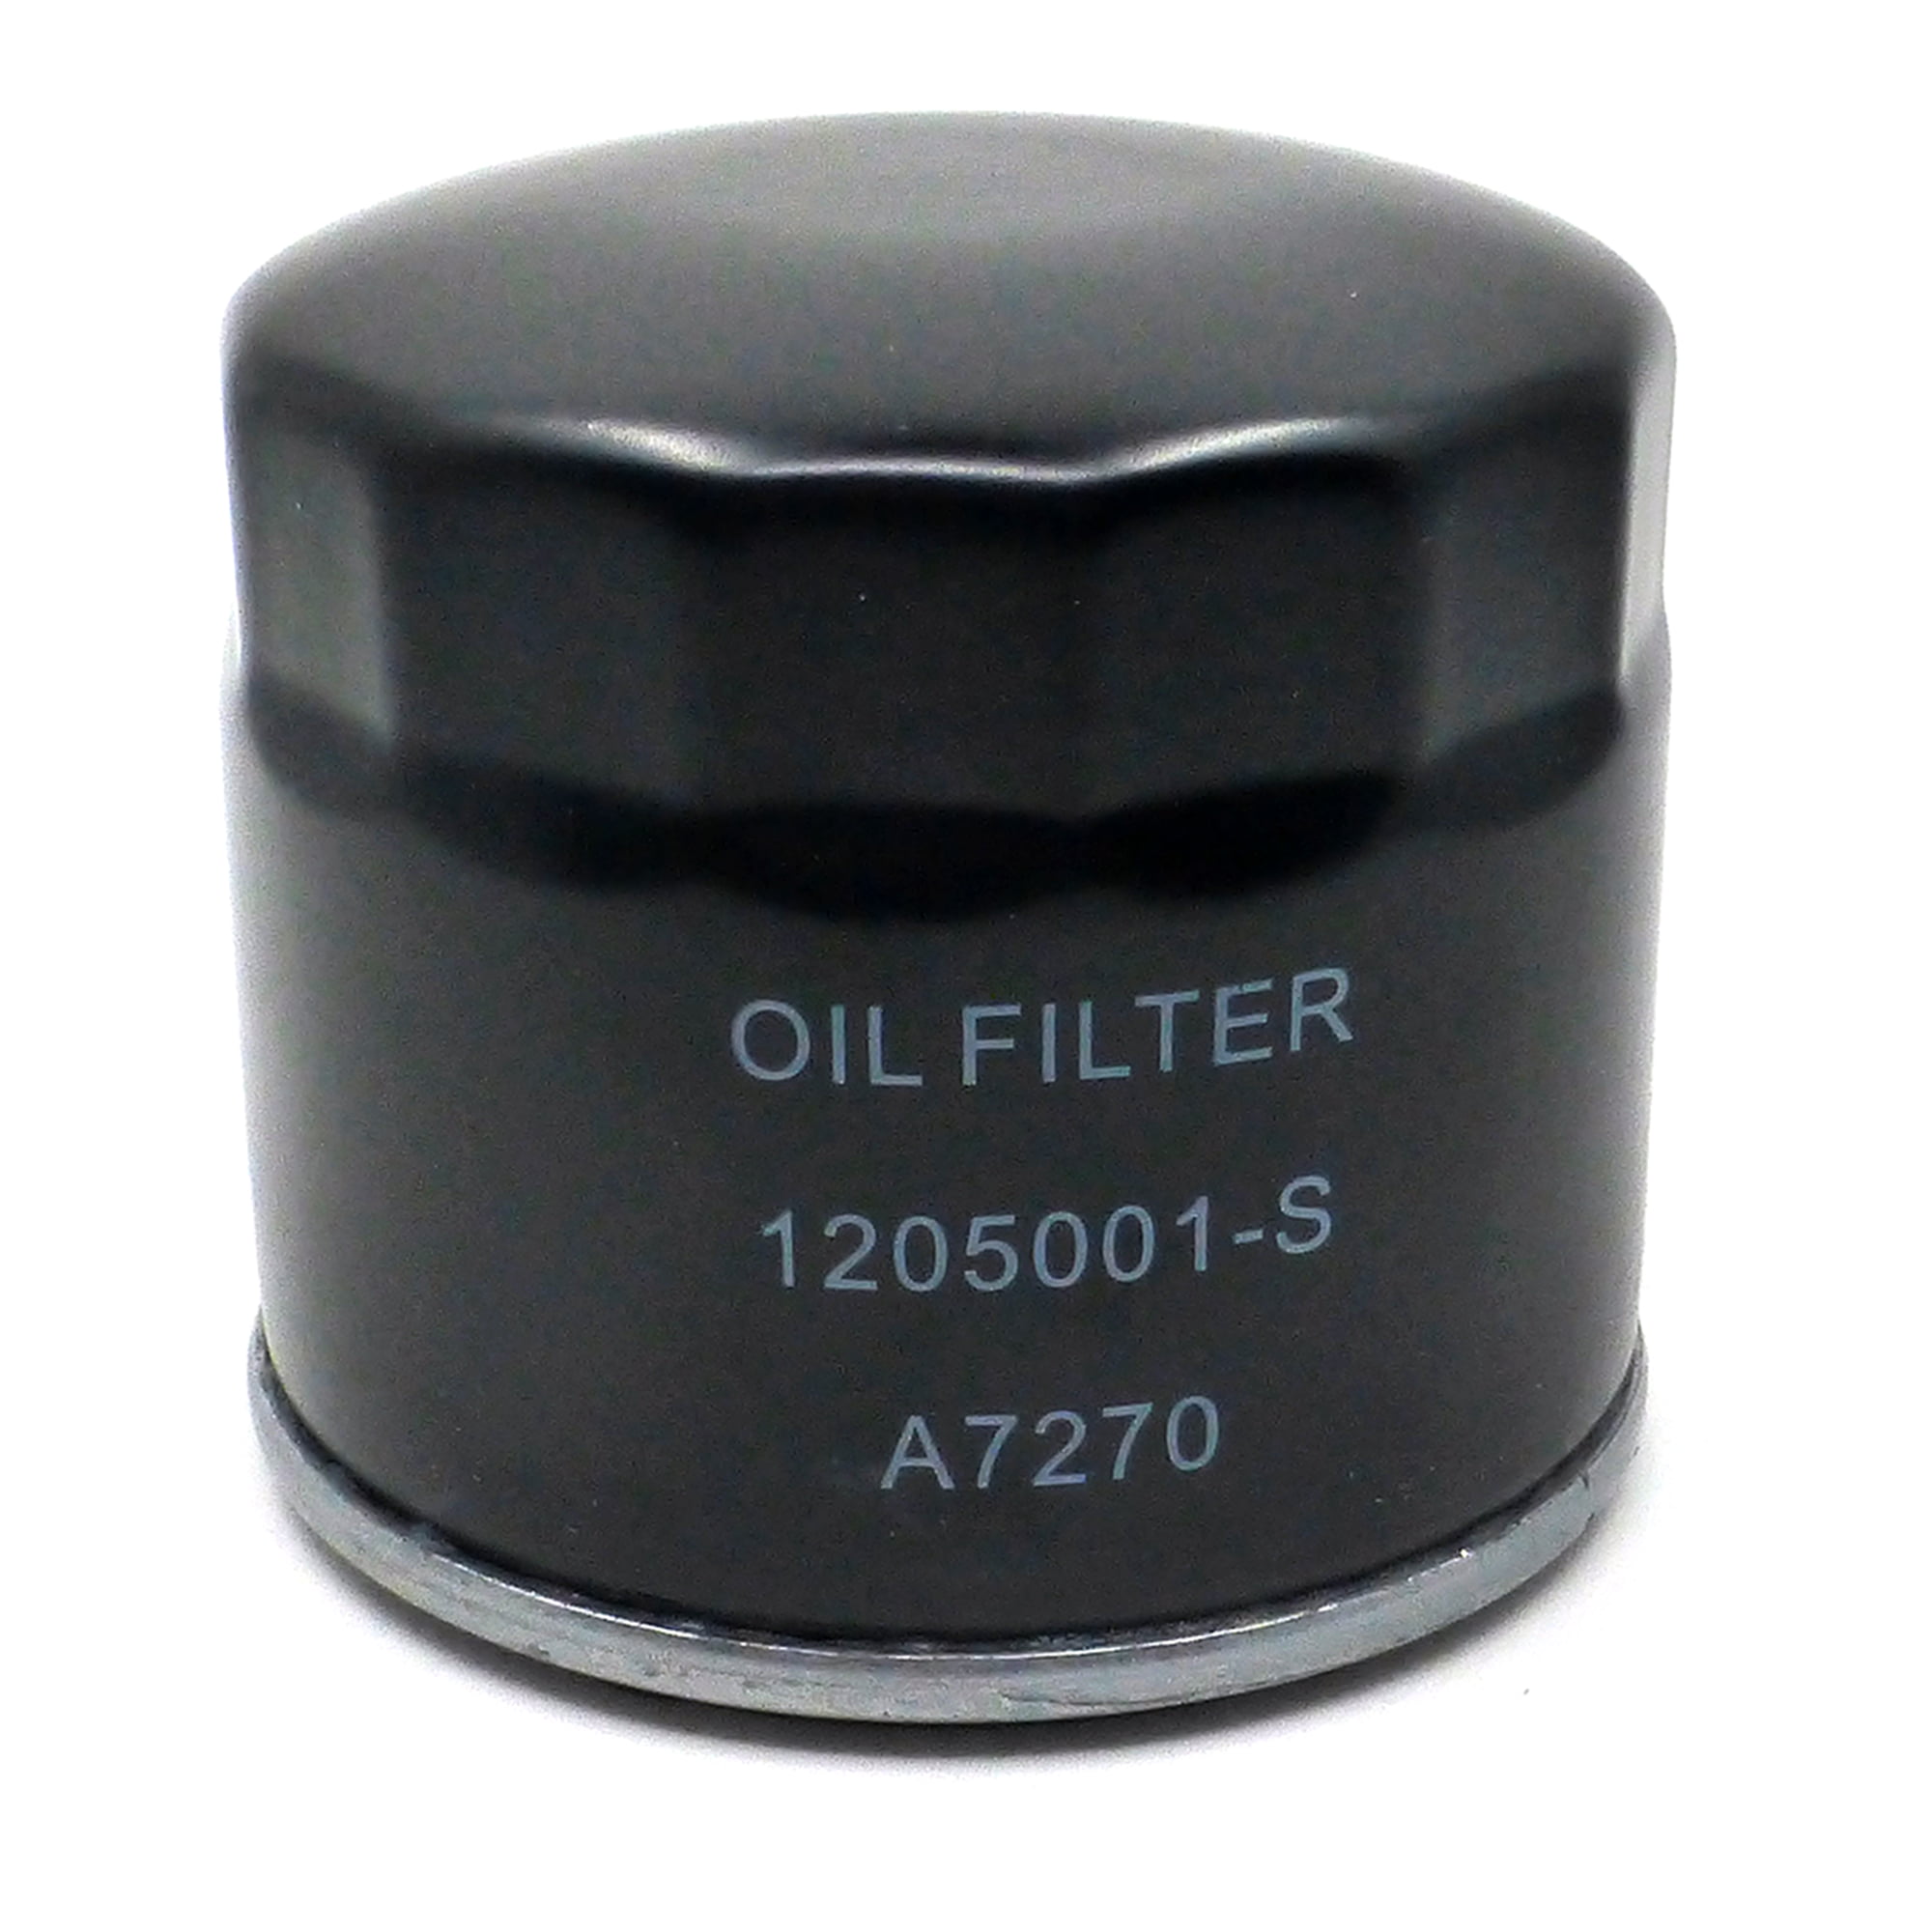 Oil Filter for John Deere Kohler Mower Engines AM125424 12-050-01-S 12 050 01-S1 